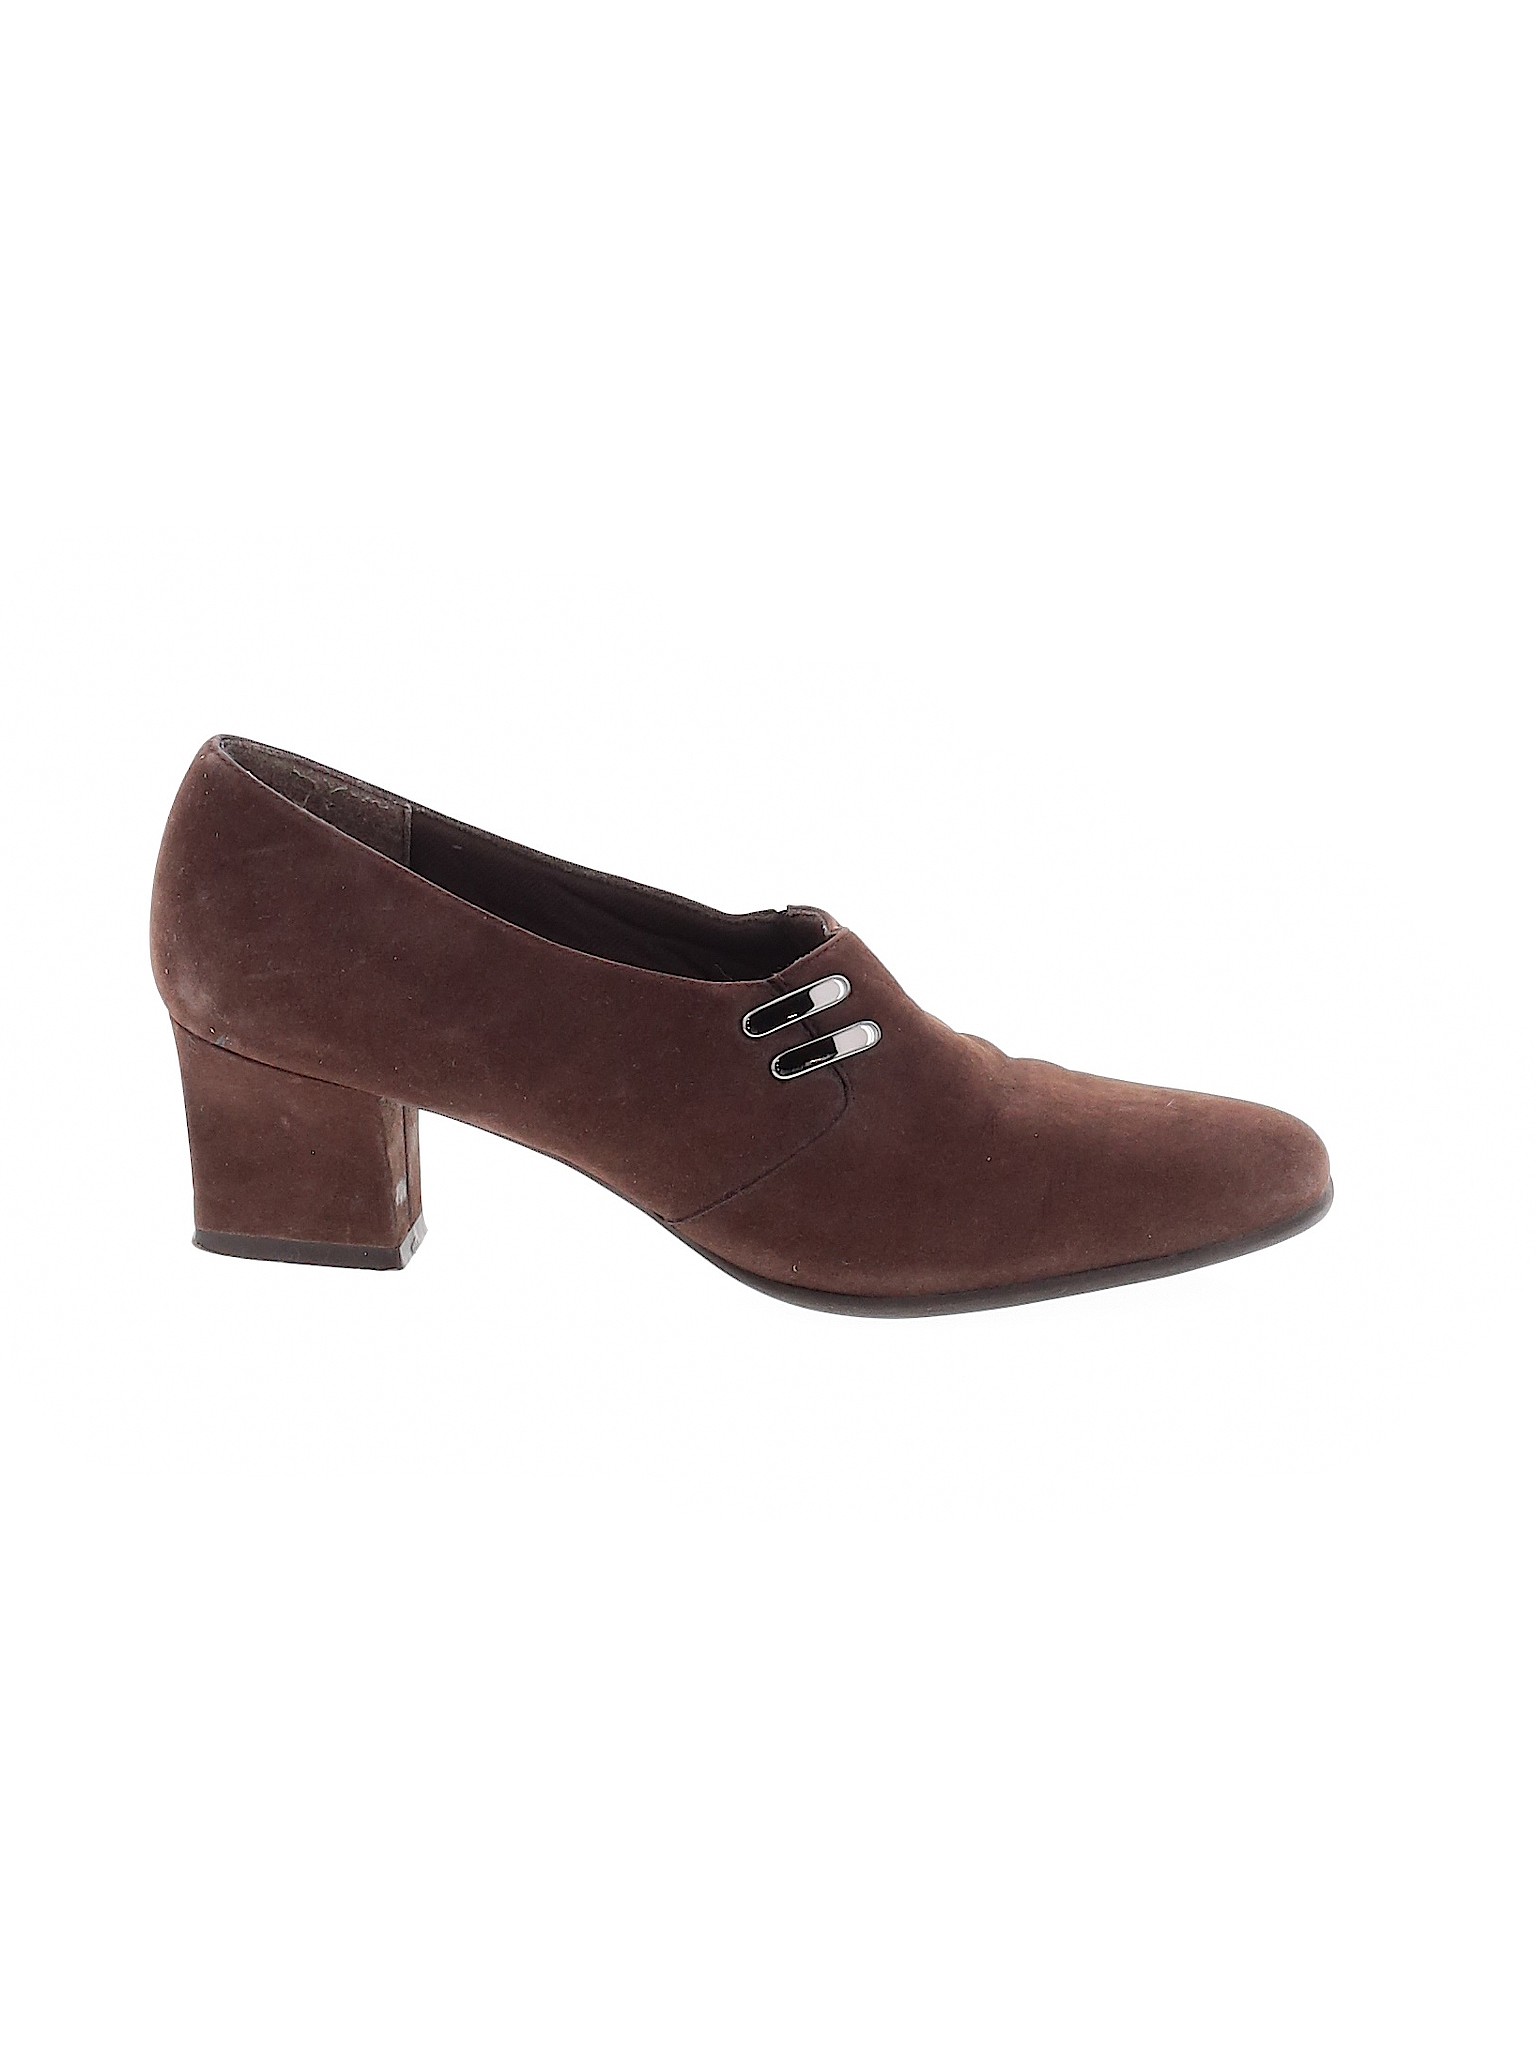 Naturalizer Women Brown Heels US 8 | eBay